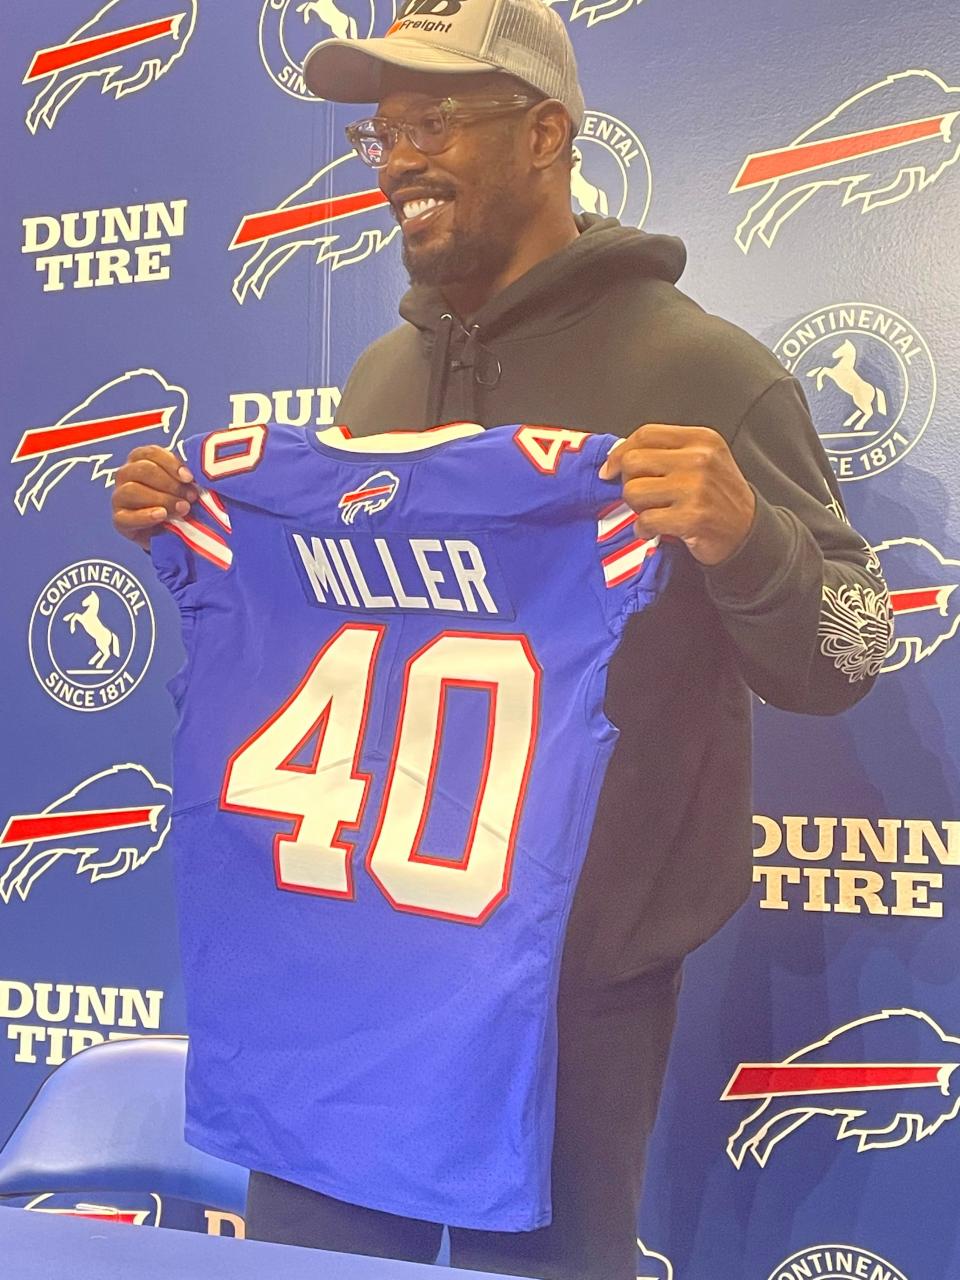 Von miller shows off his new No. 40 Bills jersey.